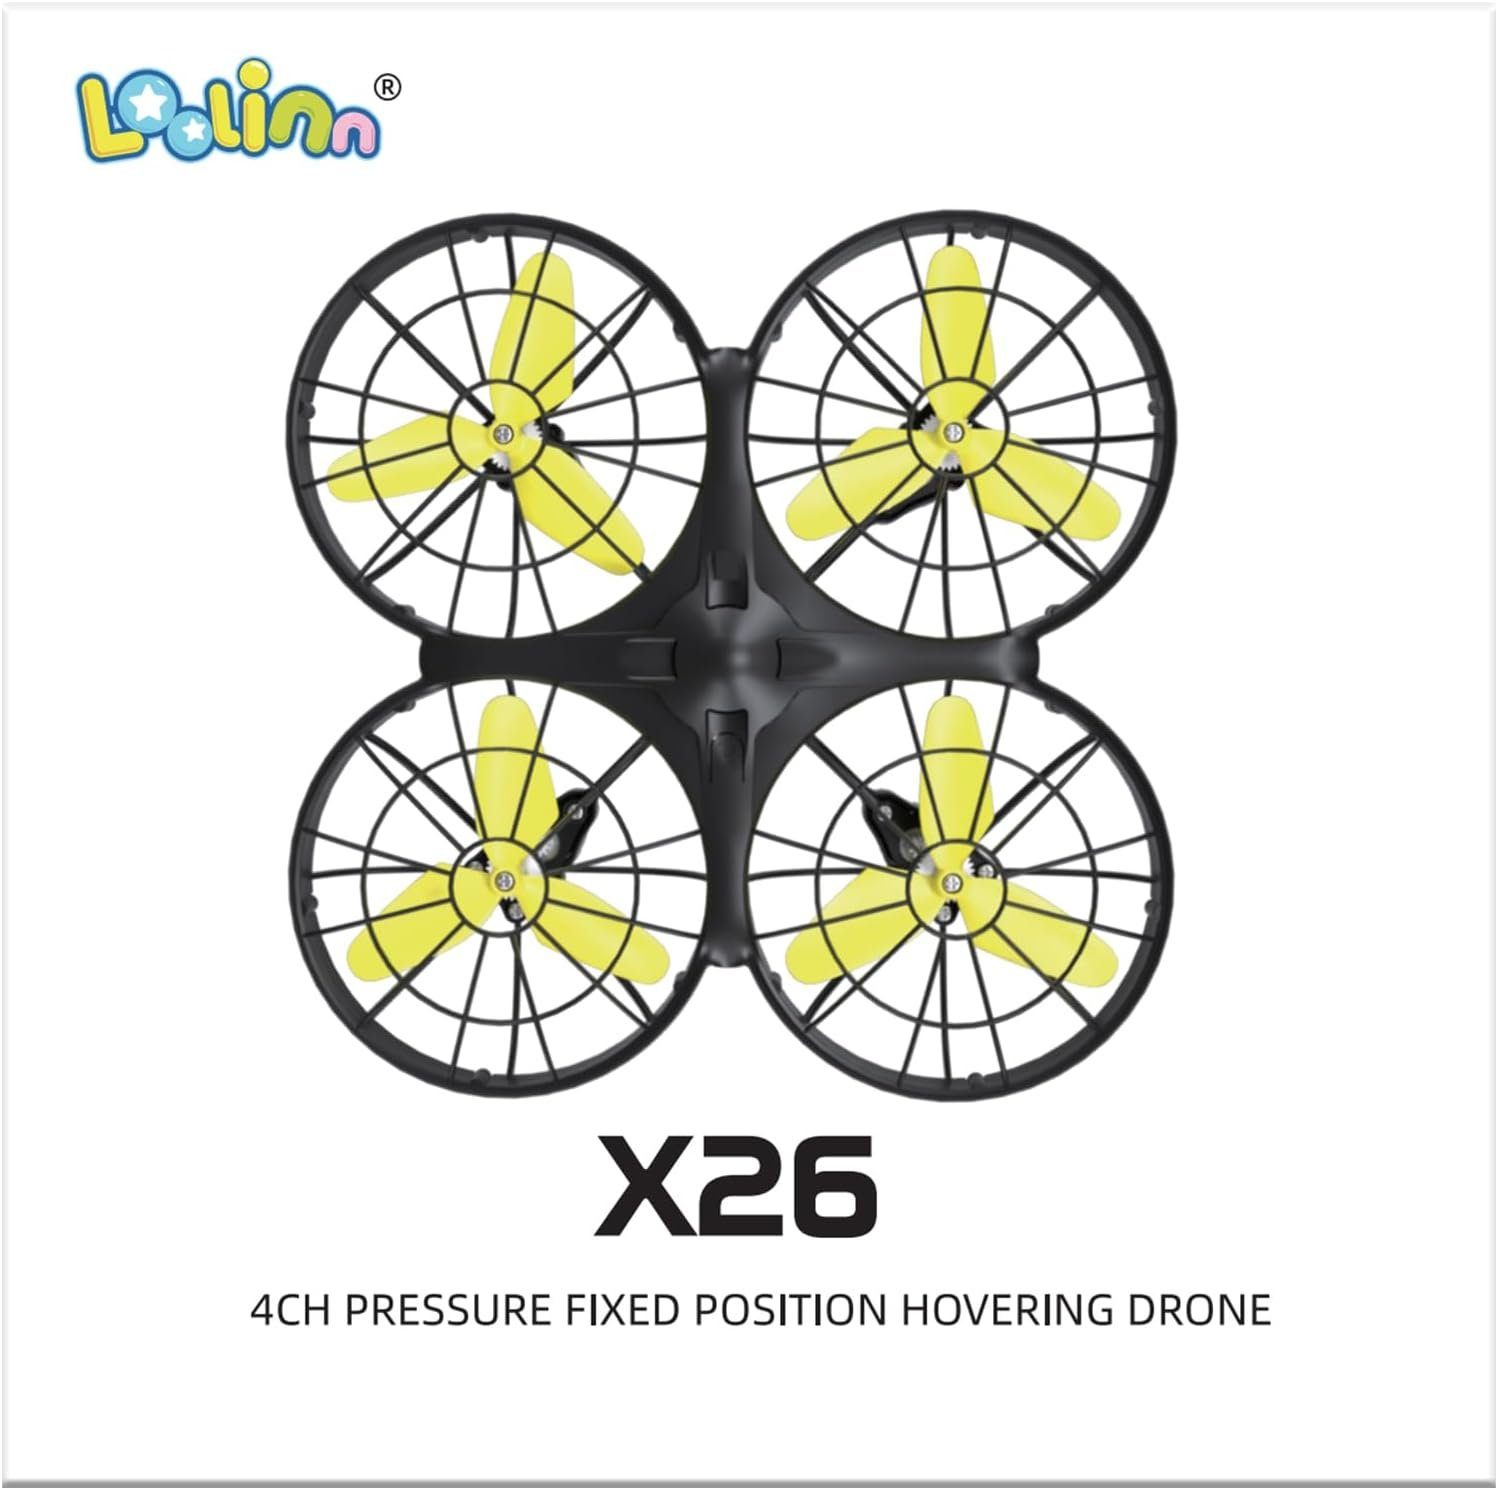 Loolinn Drohne (Kinder Mini Drohne 360° Min. Flips, Flugzeit) RC Quadrocopter, 20 